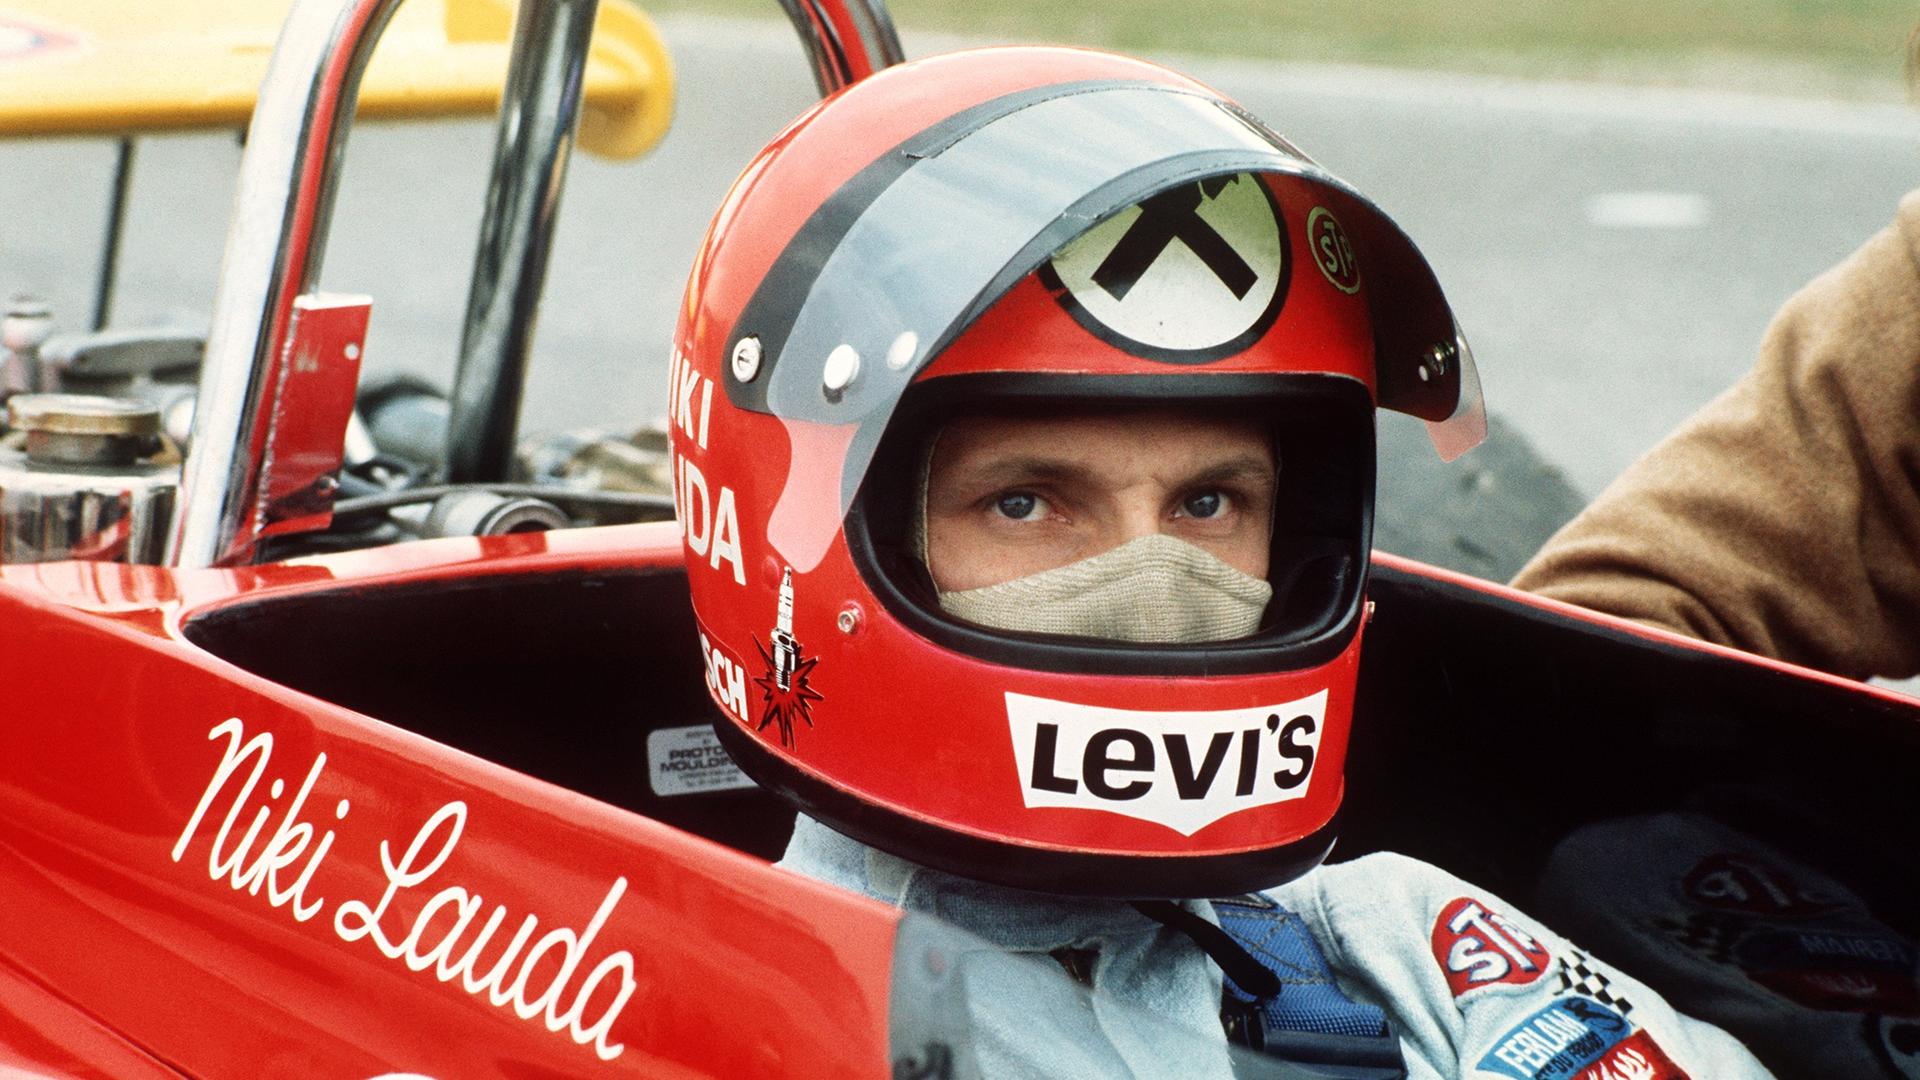 Der österreichische Rennfaher Niki Lauda in seinem roten Rennwagen, aufgenommen während des Clark-Gedächtnisrennens im April 1972. Der österreichische Rennfaher Niki Lauda sitzt in einem roten Rennwagen mit Niki Lauda-Schriftzug. Er trägt einen Helm und eine Gesichtsmaske.